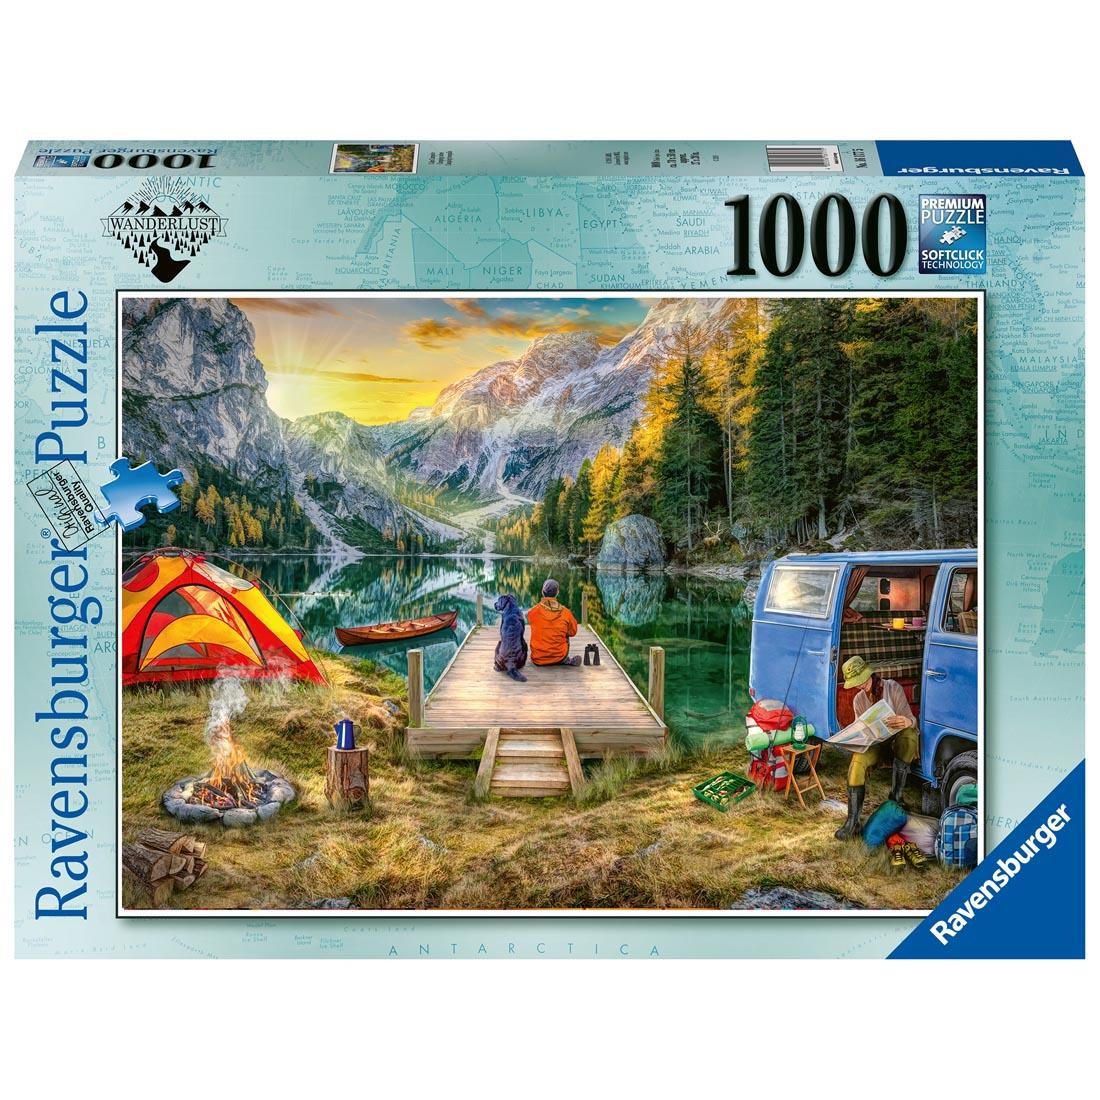 Calm Campsite 1000-Piece Puzzle by Ravensburger